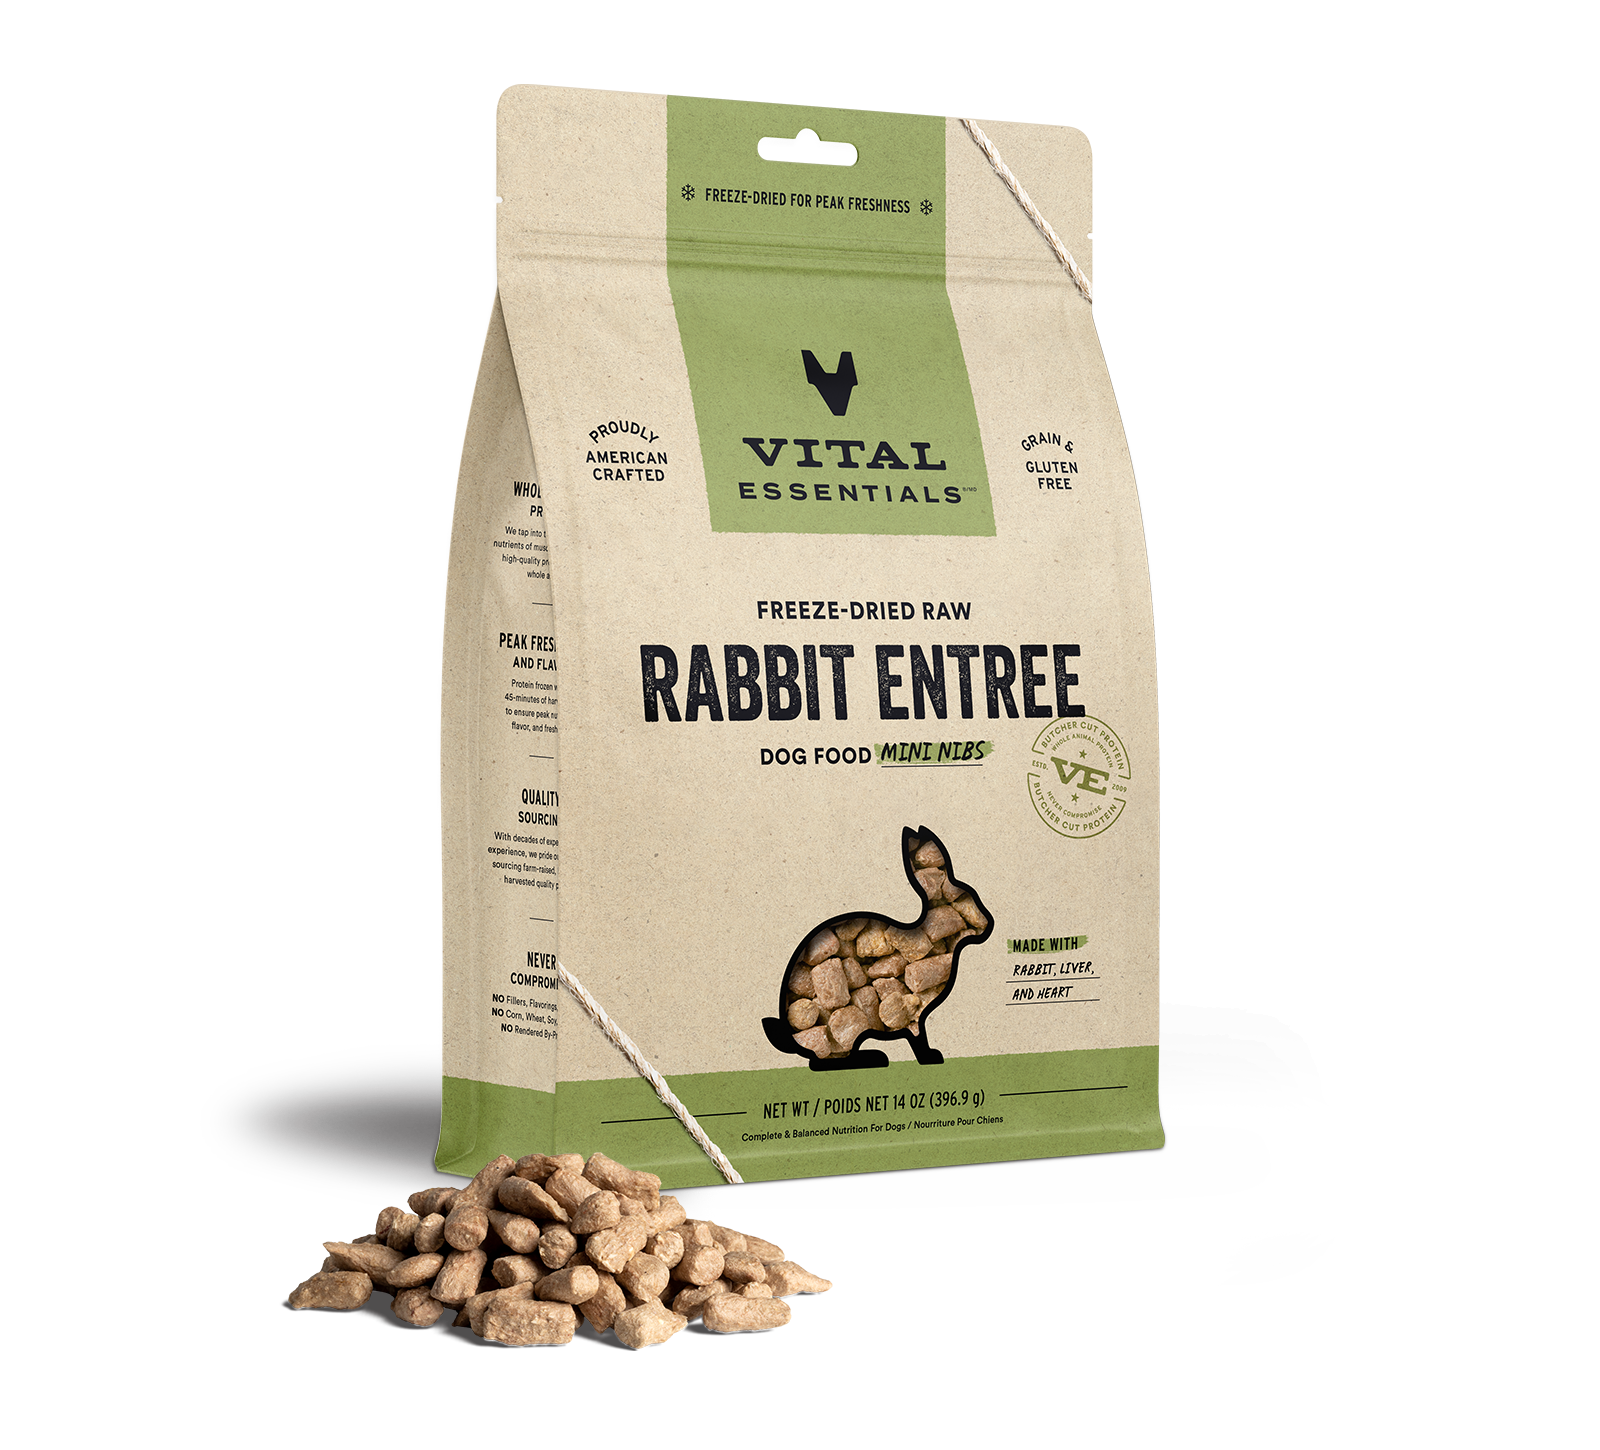 Vital Essentials Freeze-Dried Raw Rabbit Entree Dog Food Mini Nibs, 14 oz - Treats